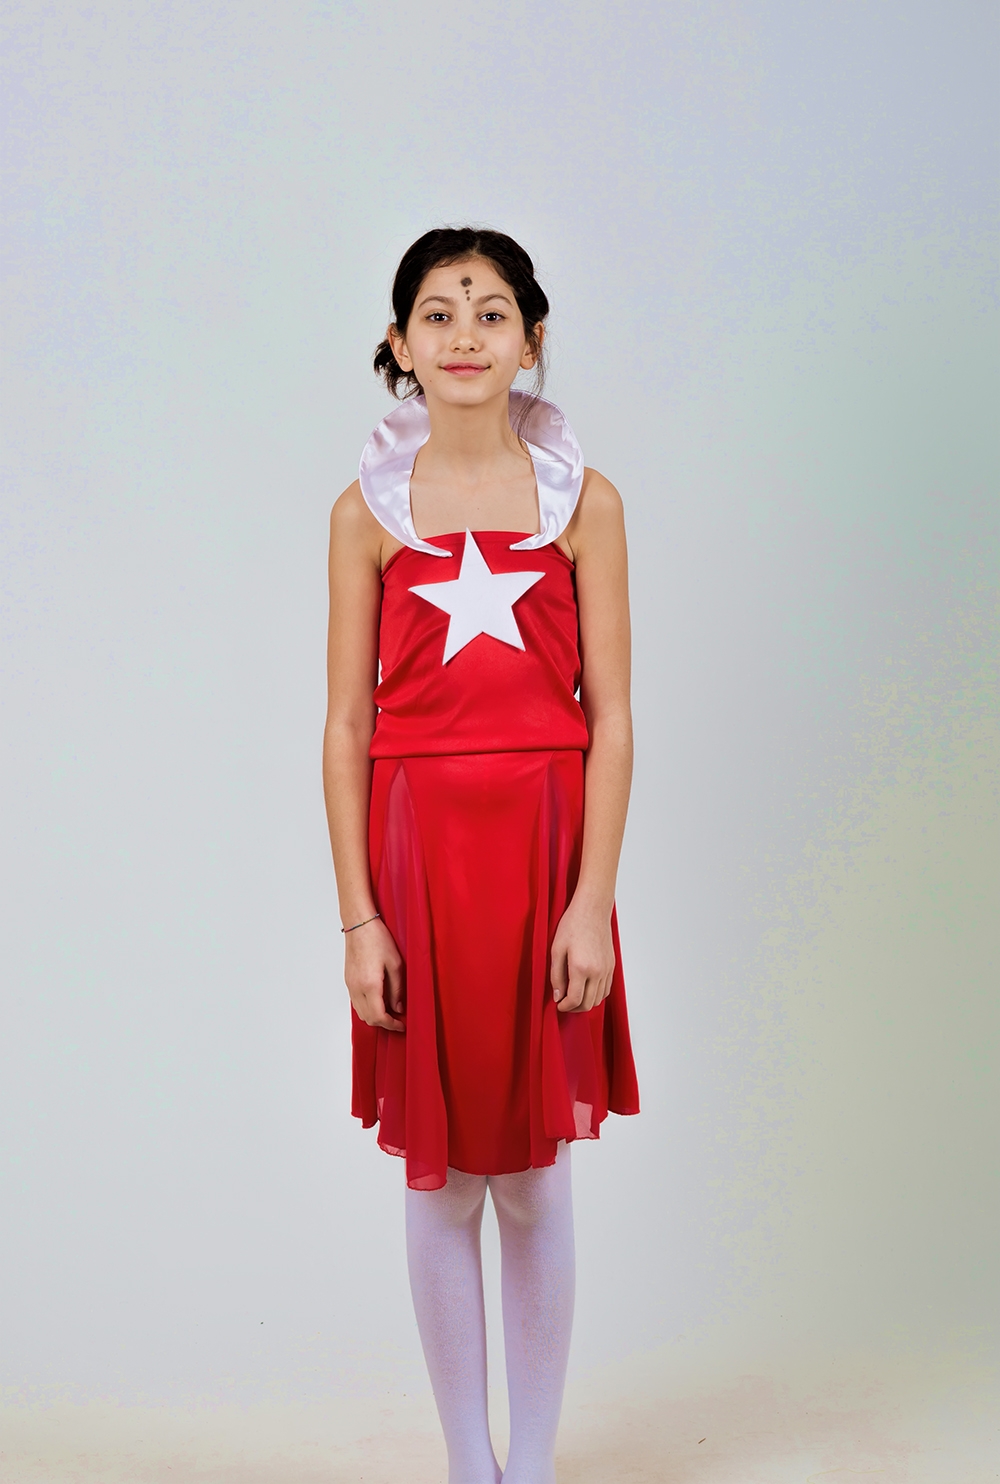 Çocuk Türk Bayrağı Kostümü